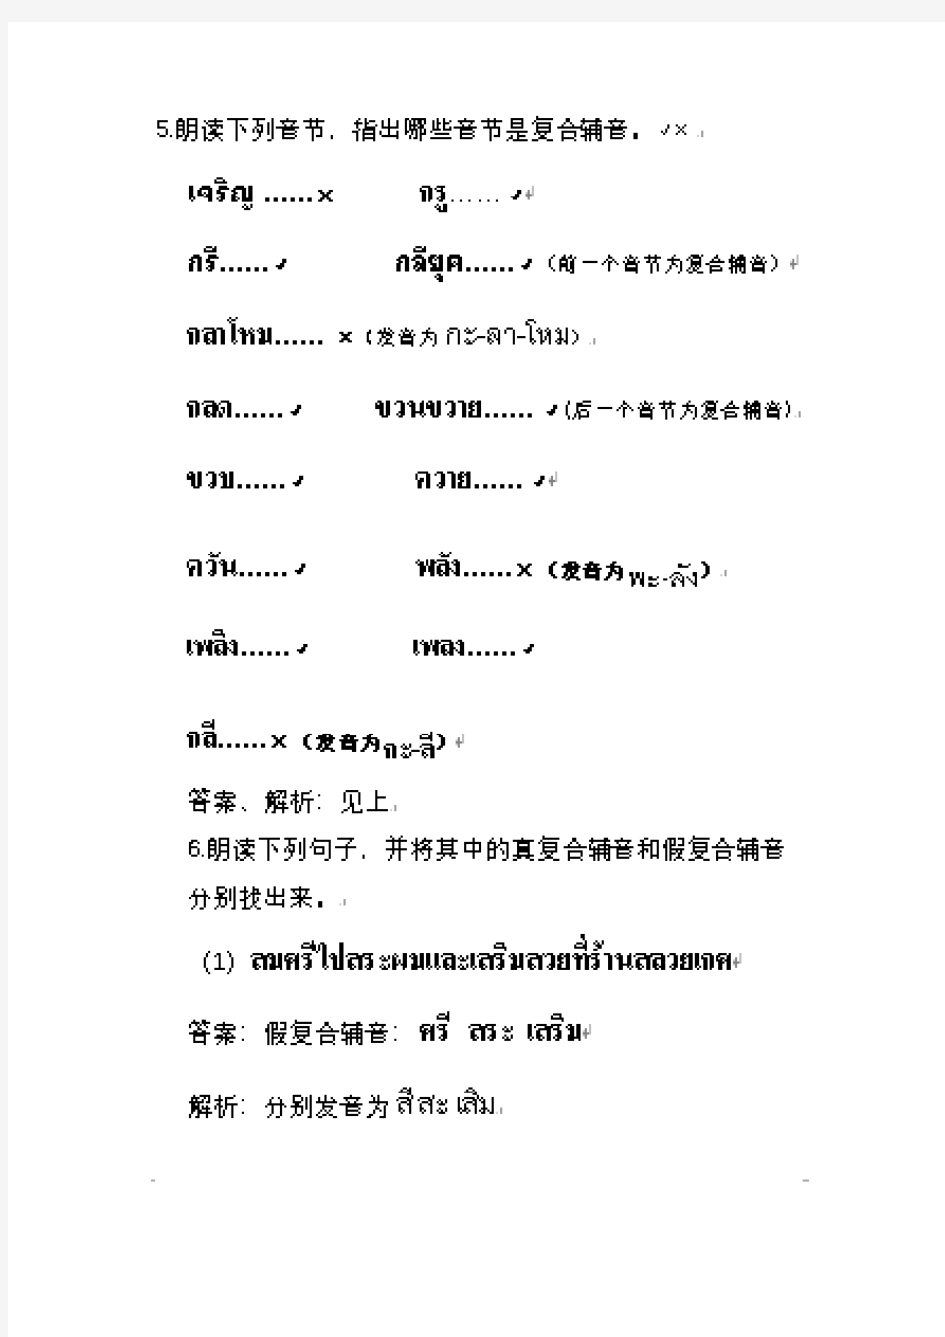 基础泰语1课后作业答案与解析(图文版)